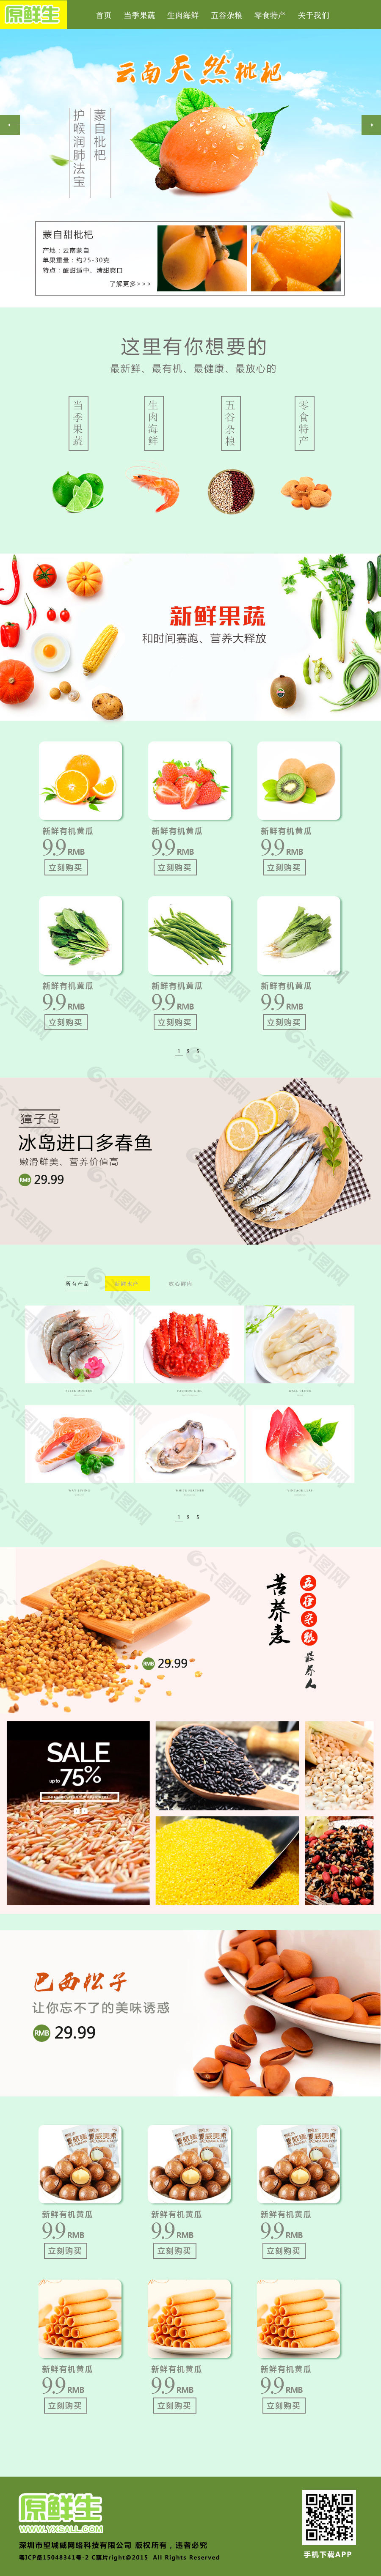 清新 简约 食物 生鲜超市 网页设计